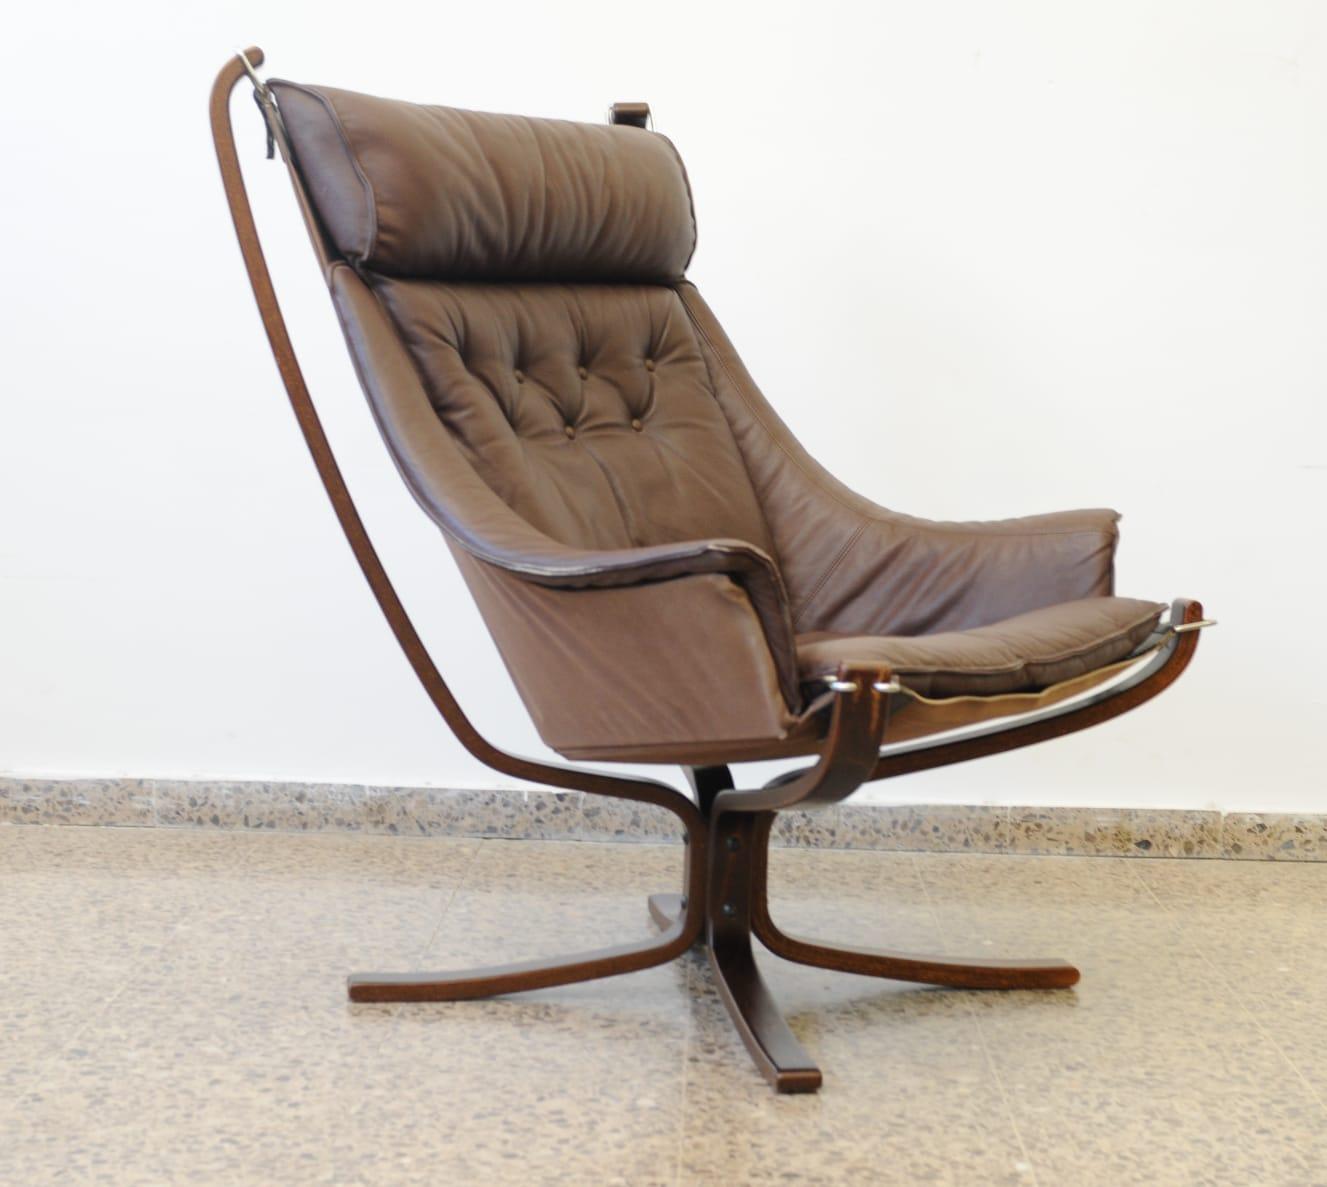 Schöne skandinavisch gestaltete Lounge Falcon Stühle von Sigurd Ressell ca. Anfang bis Mitte der 1970er Jahre
Das Modell 